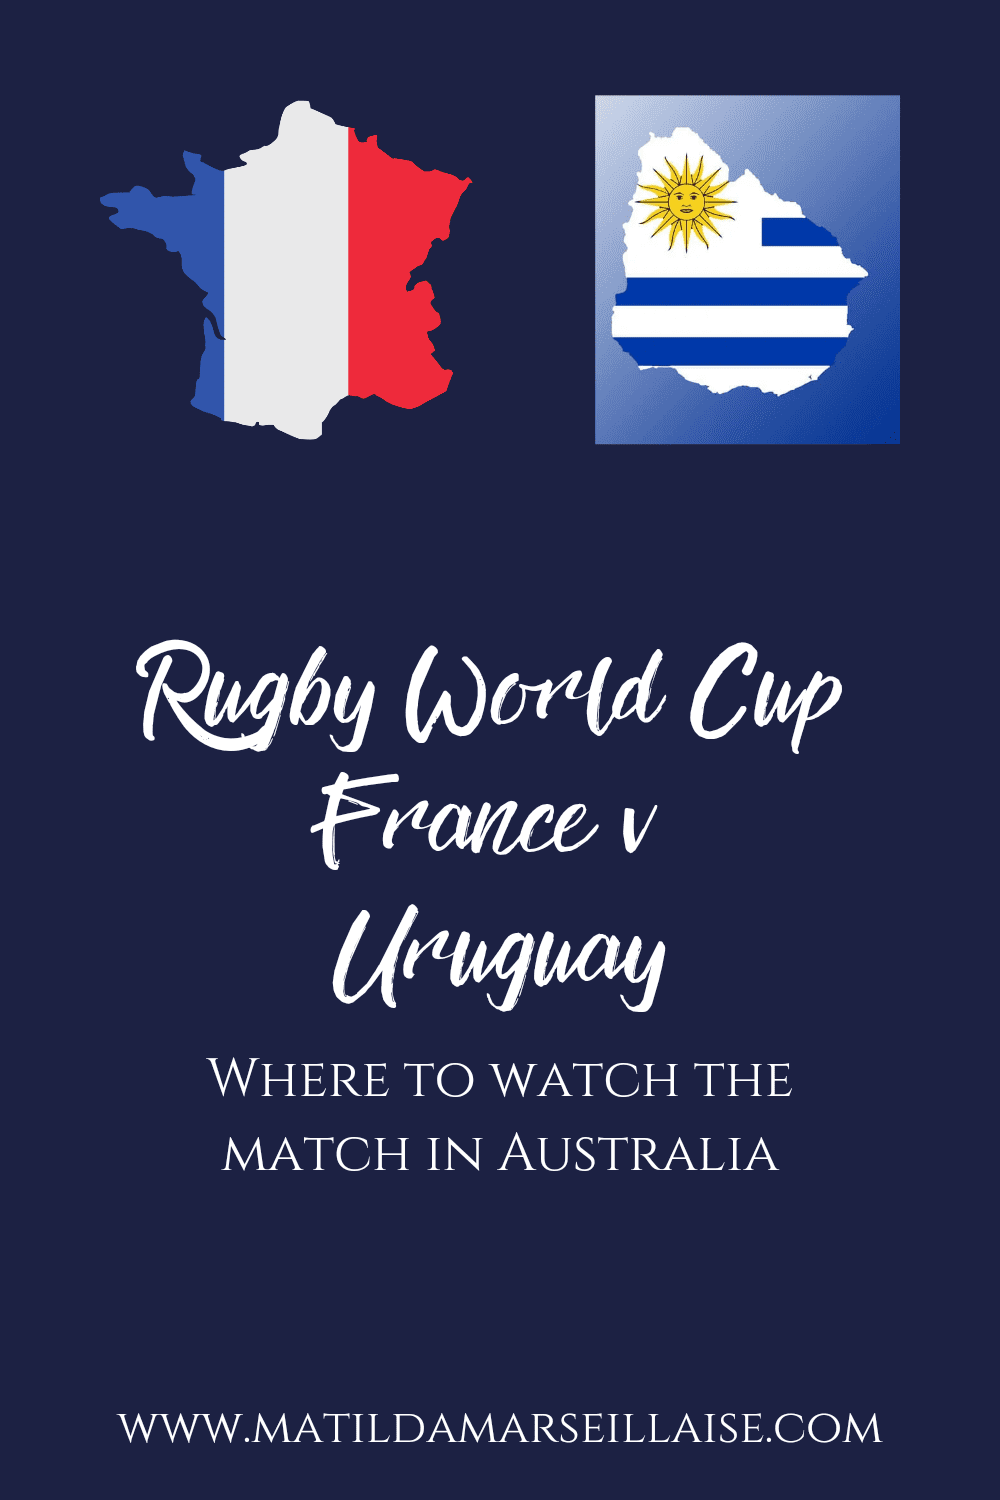 France V Uruguay in Australia